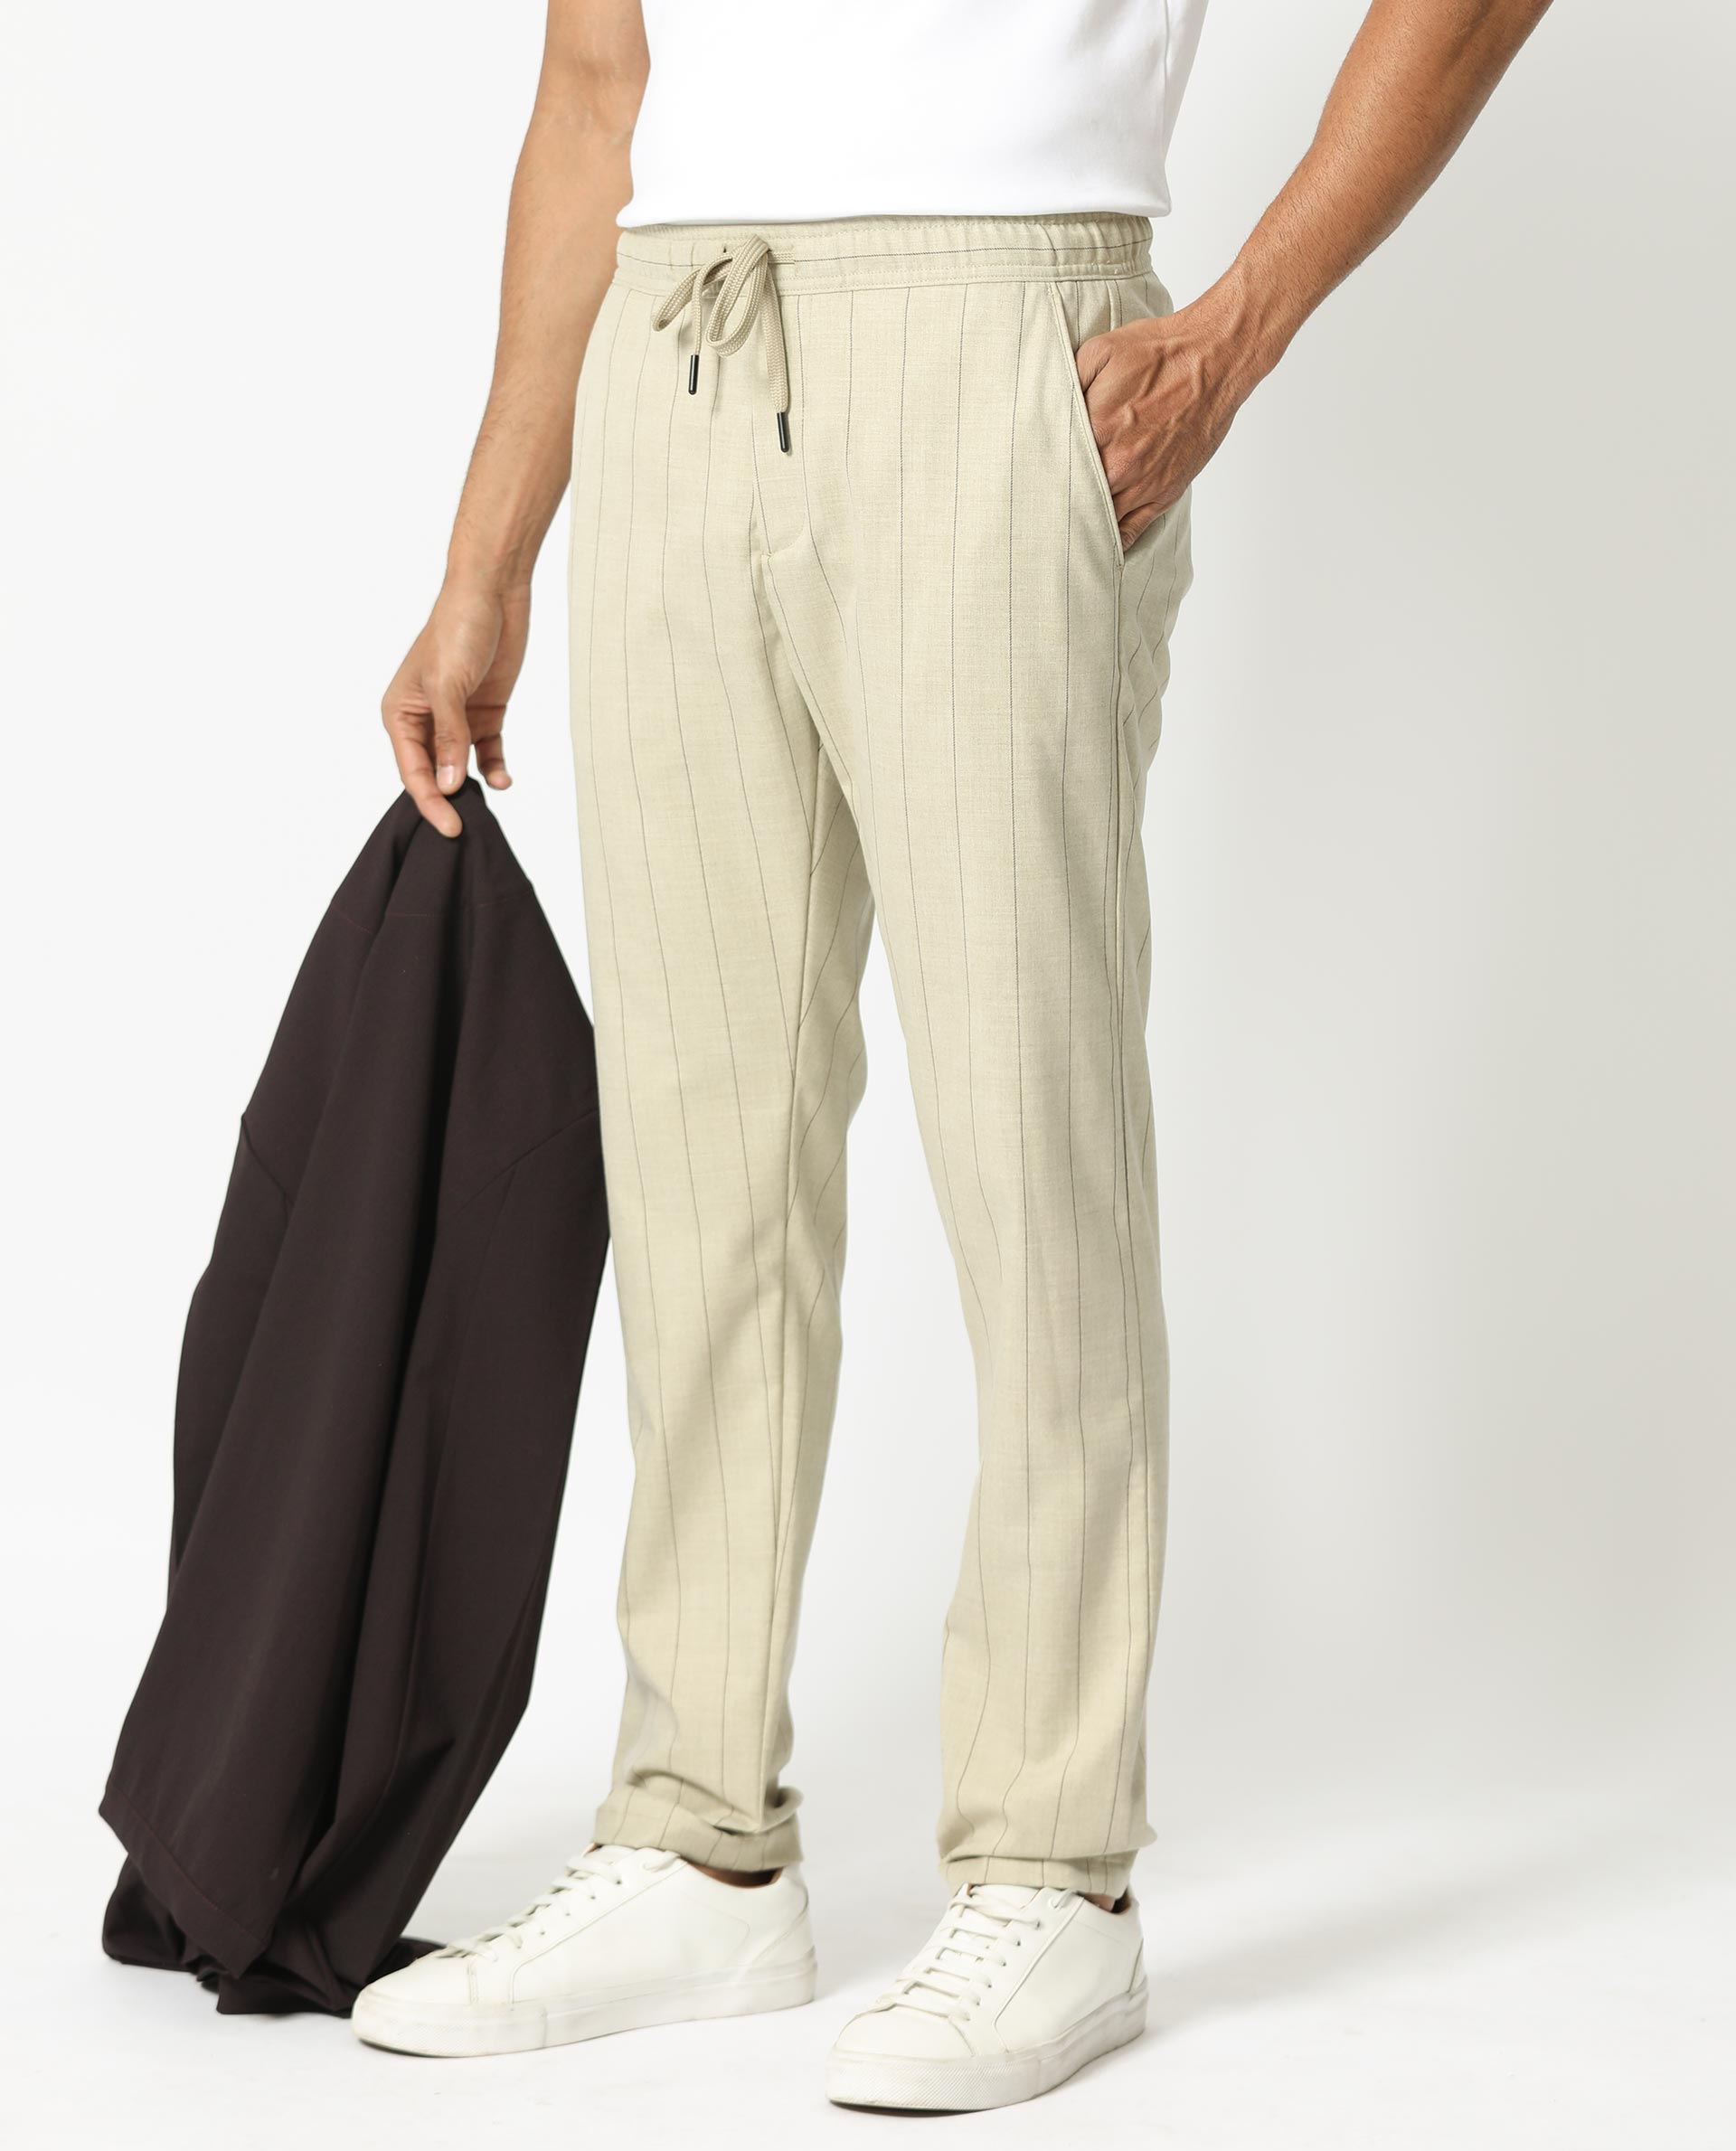 Linen Drawstring Trousers - Light Beige - Men